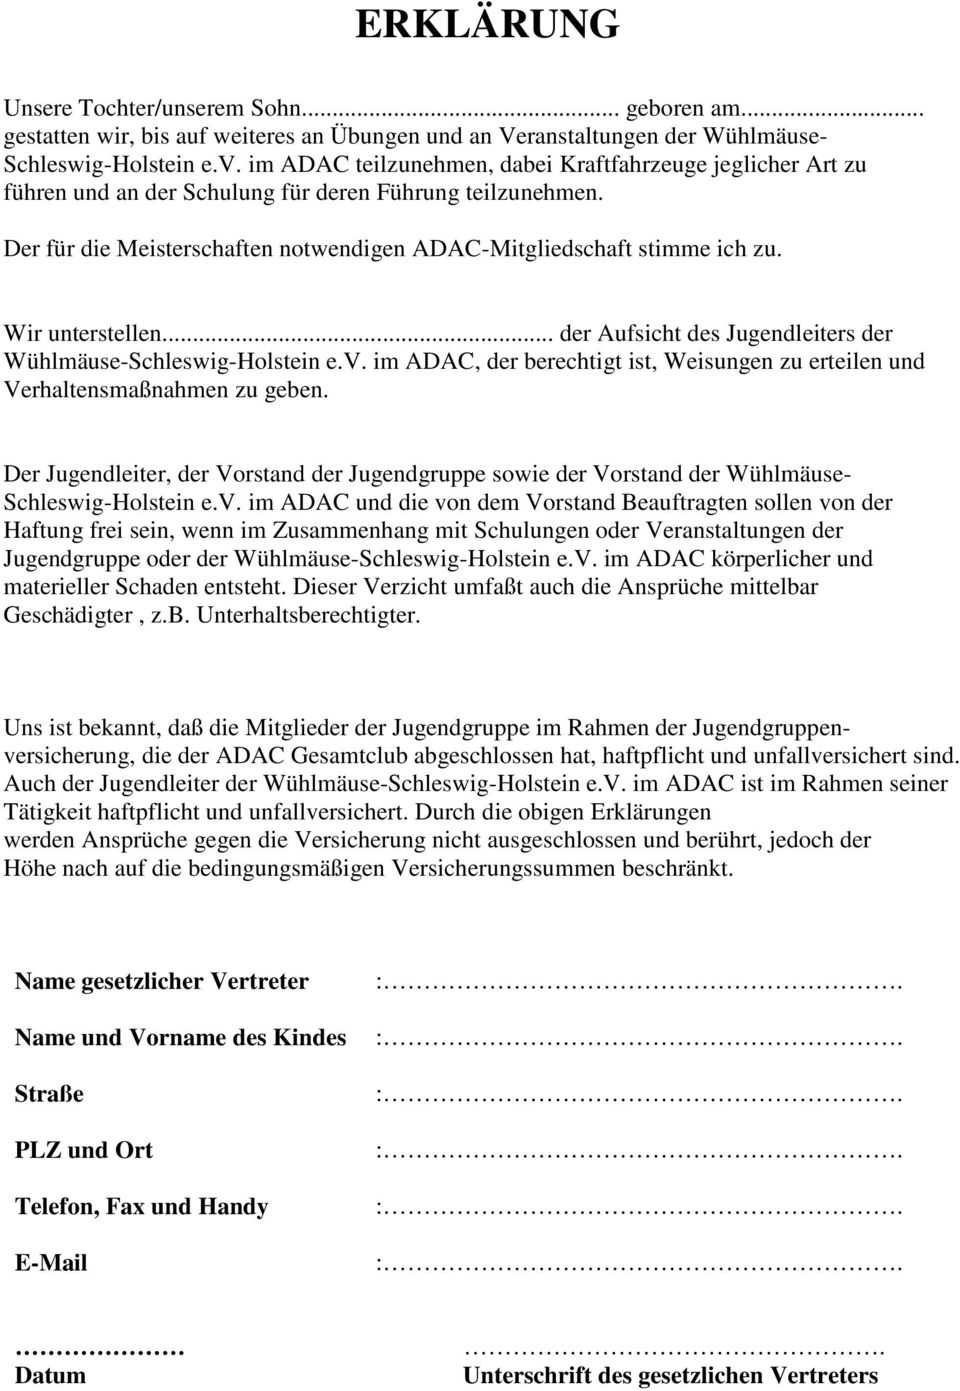 Wir unterstellen... der Aufsicht des Jugendleiters der Wühlmäuse-Schleswig-Holstein e.v. im ADAC, der berechtigt ist, Weisungen zu erteilen und Verhaltensmaßnahmen zu geben.